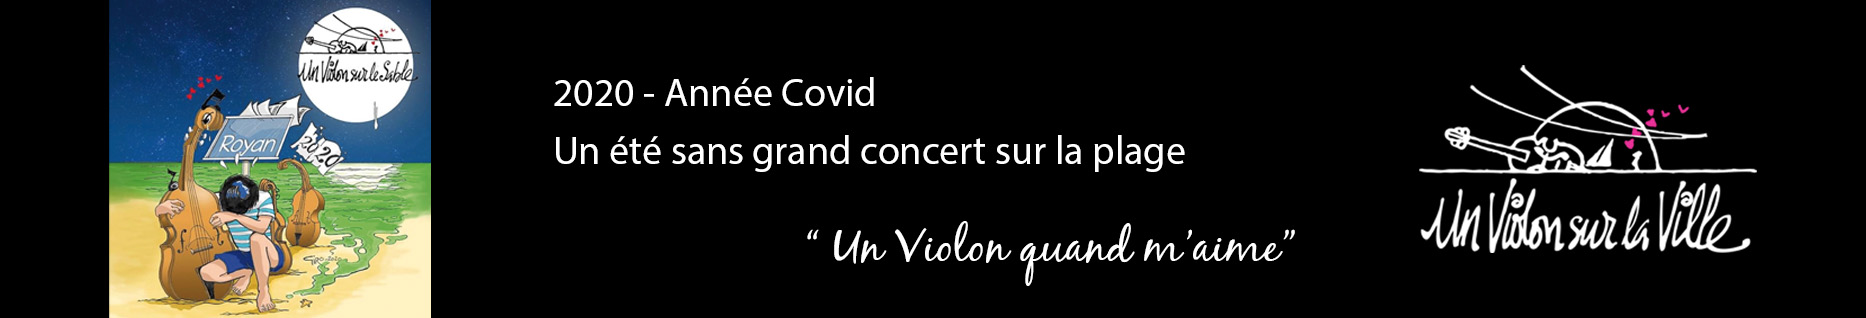 soliste concert classique festival un violon sur le sable Royan Charente Maritime France